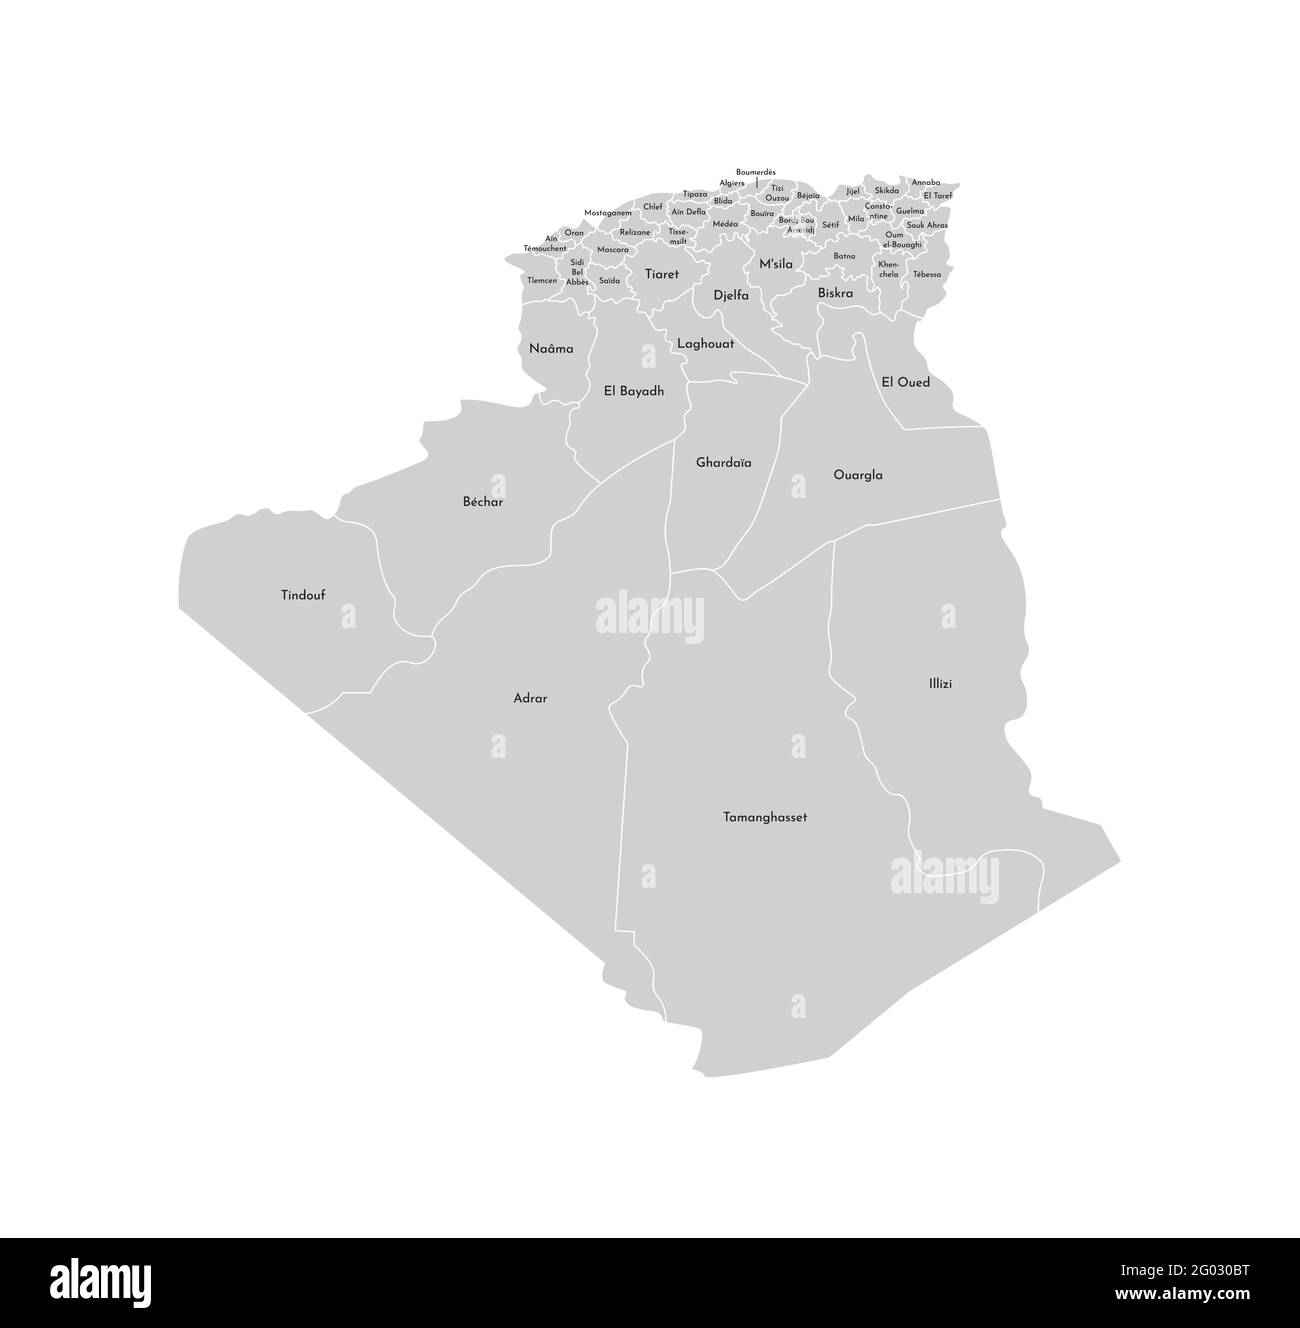 Vektor isolierte Illustration einer vereinfachten Verwaltungskarte von Algerien. Grenzen und Namen der Provinzen (Regionen). Graue Silhouetten. Weißer Outlin Stock Vektor